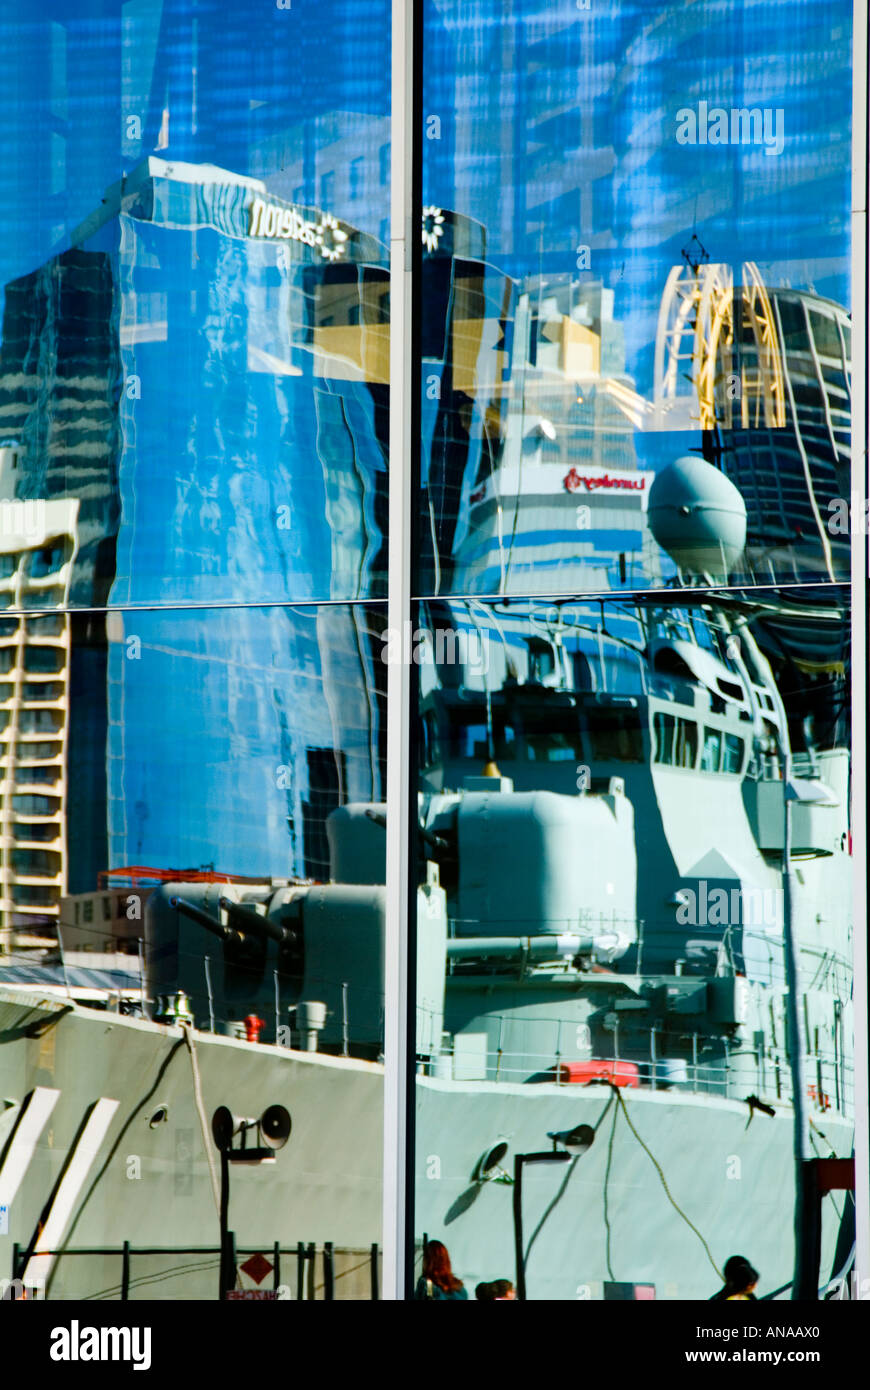 Reflet de destroyer et Sydney skyline dans windows de Australian Maritime Museum Banque D'Images